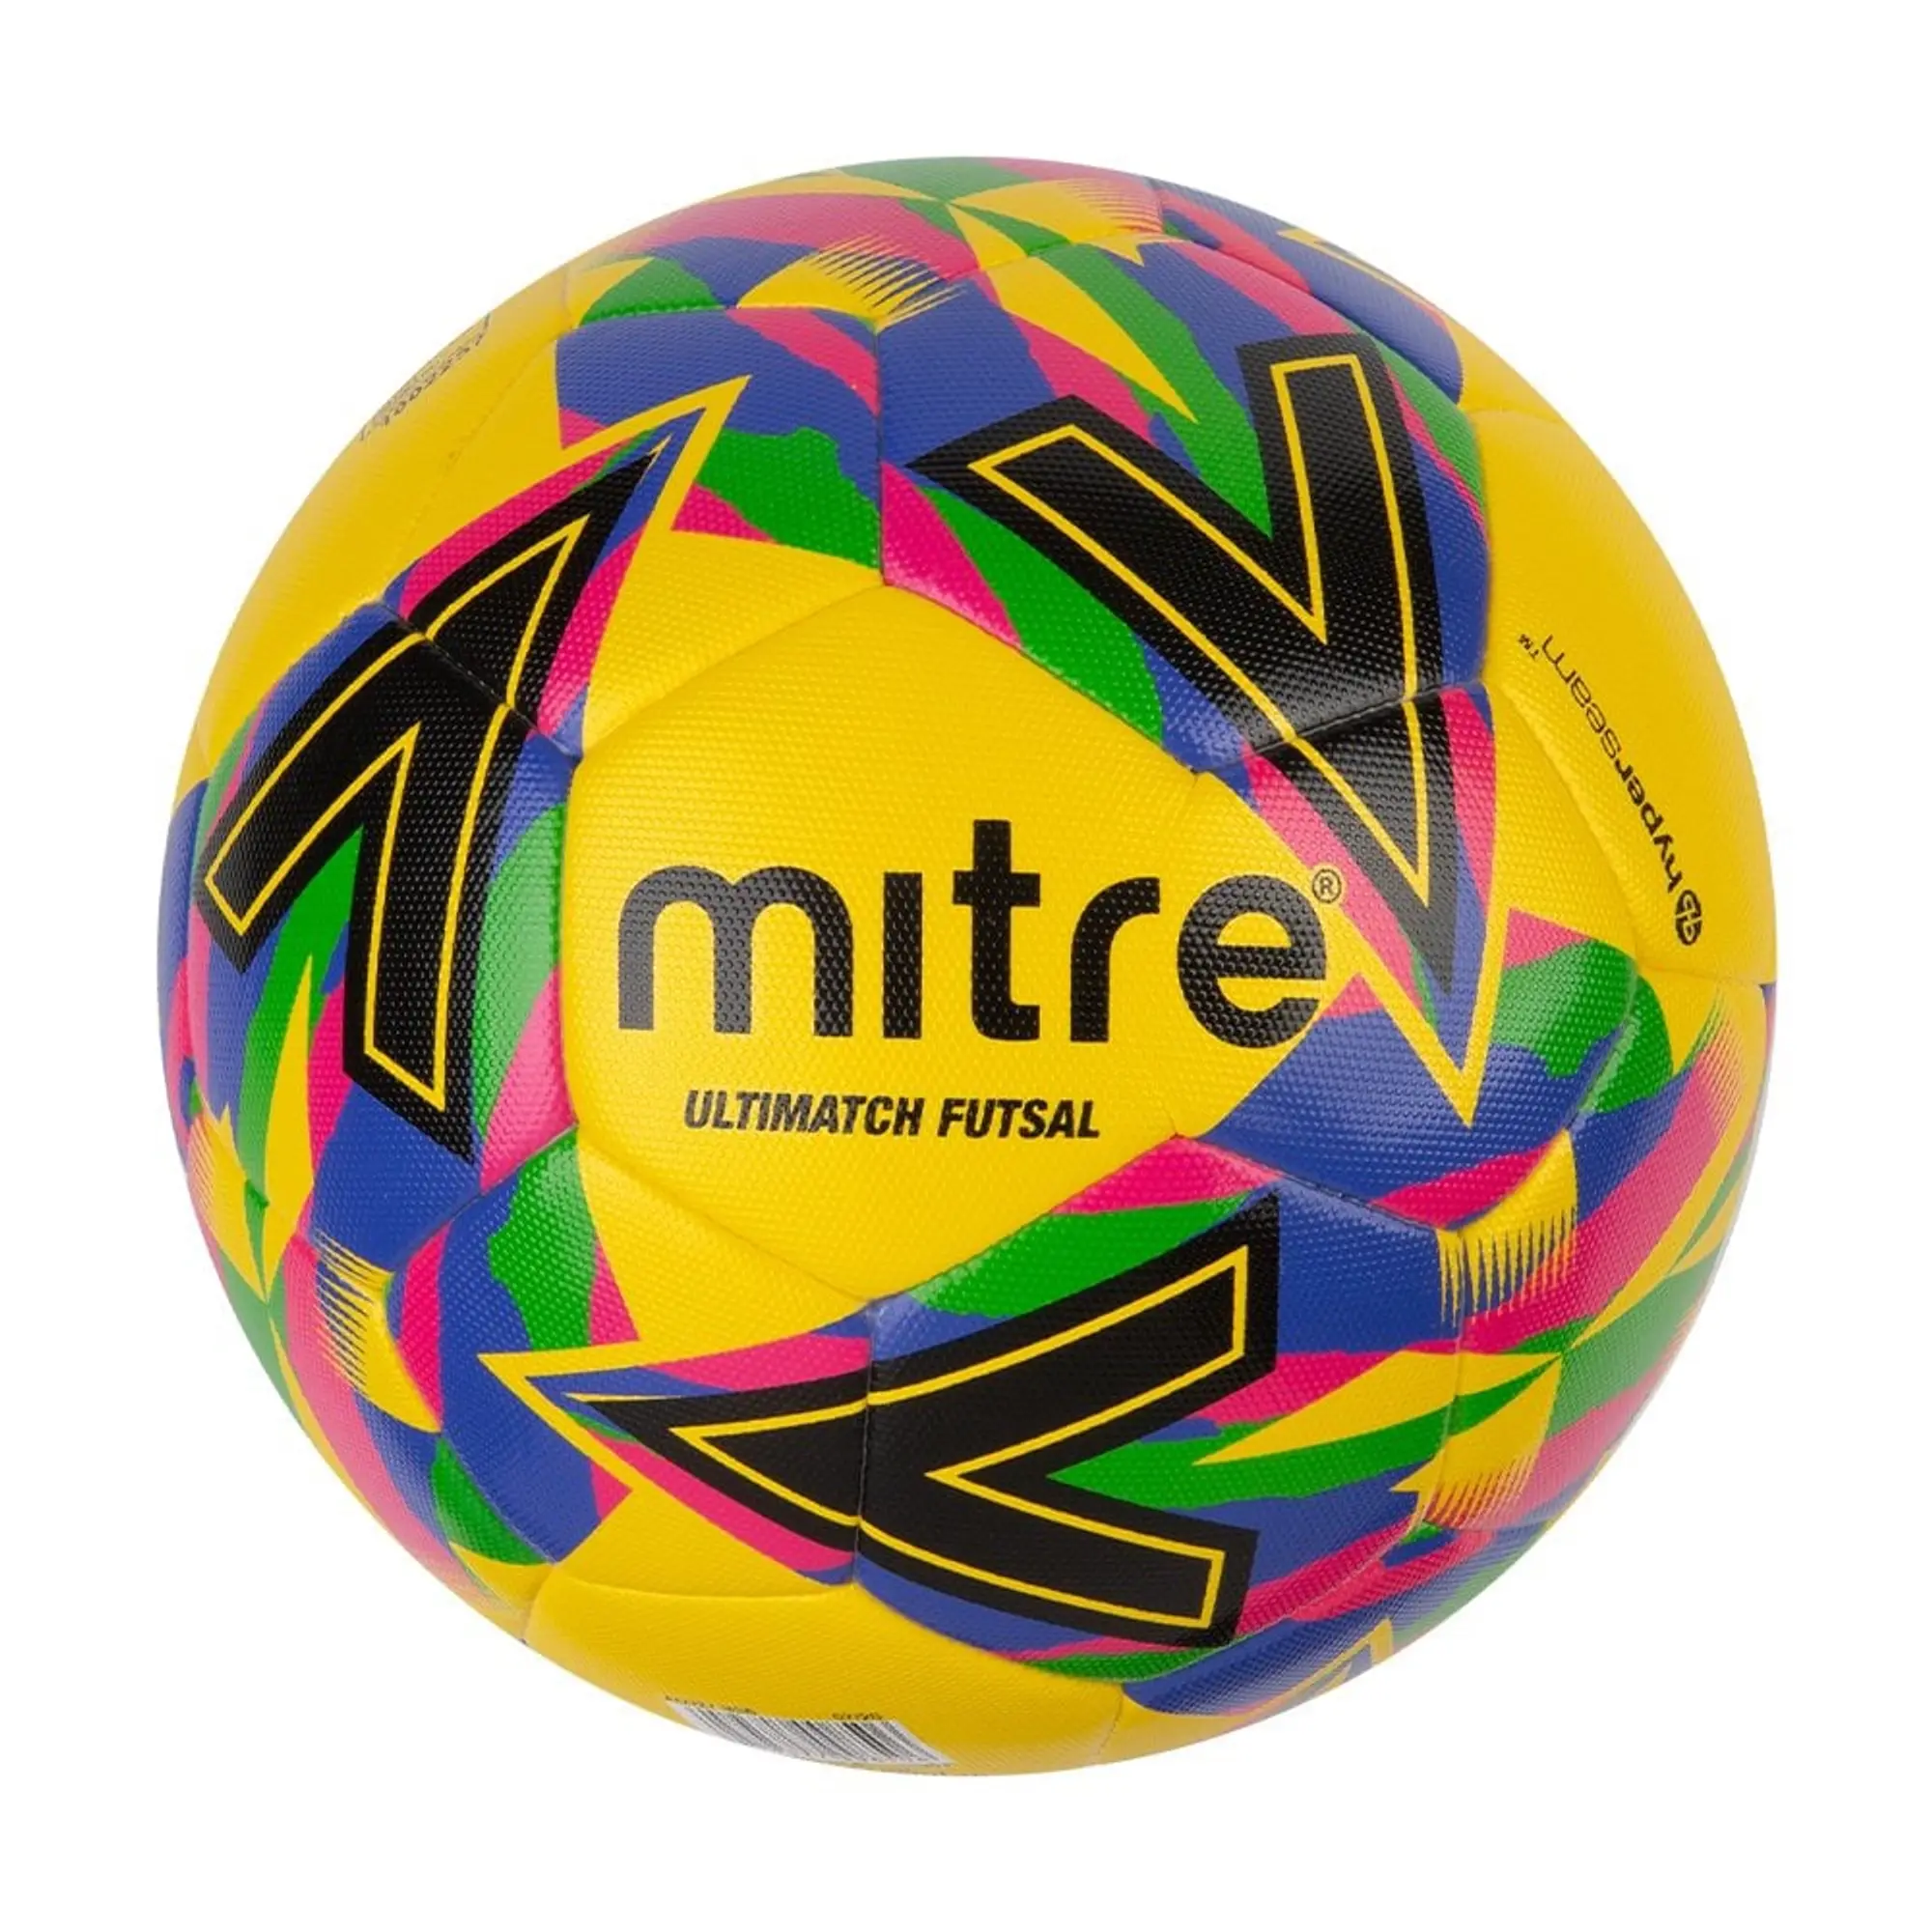 Mitre Futsal Football - Multi